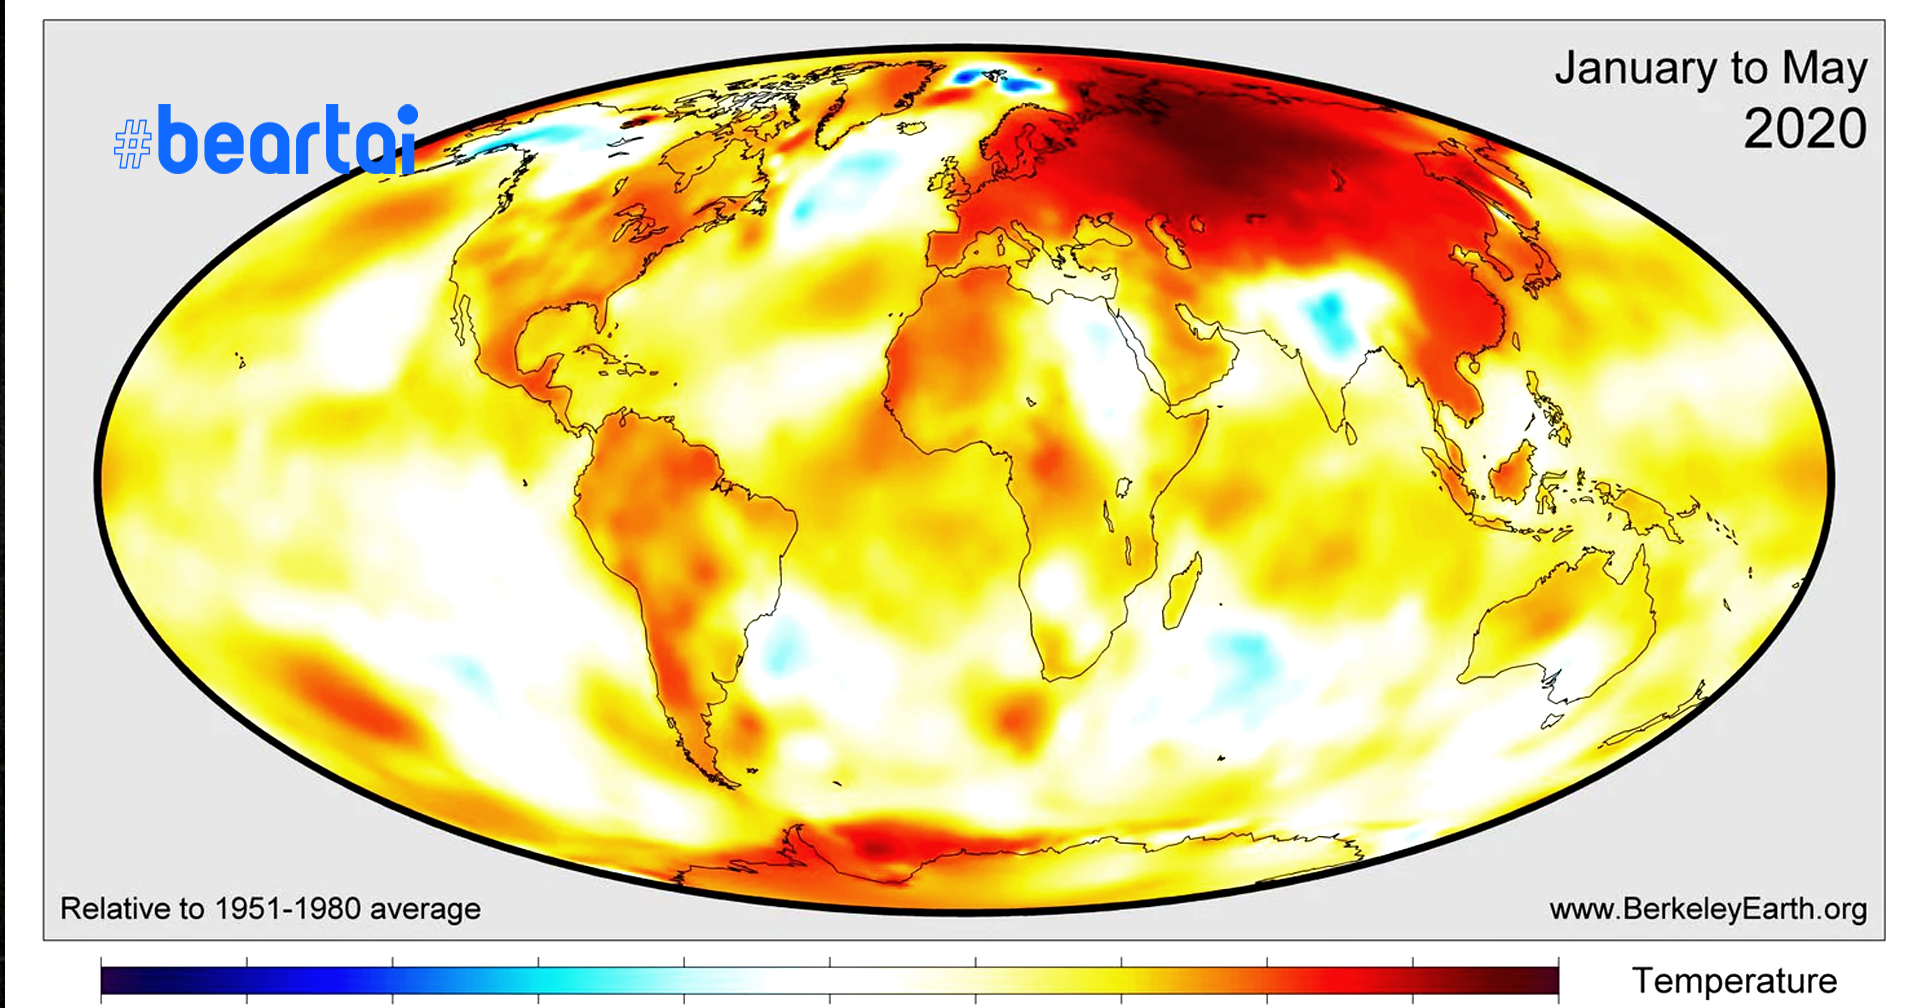 พฤษภาคมปีนี้ ทุบสถิติเดือนที่ “ร้อนที่สุด” ของโลก และรัสเซียต้องเผชิญความเลวร้ายของภาวะโลกร้อนหนักขึ้นทุกที